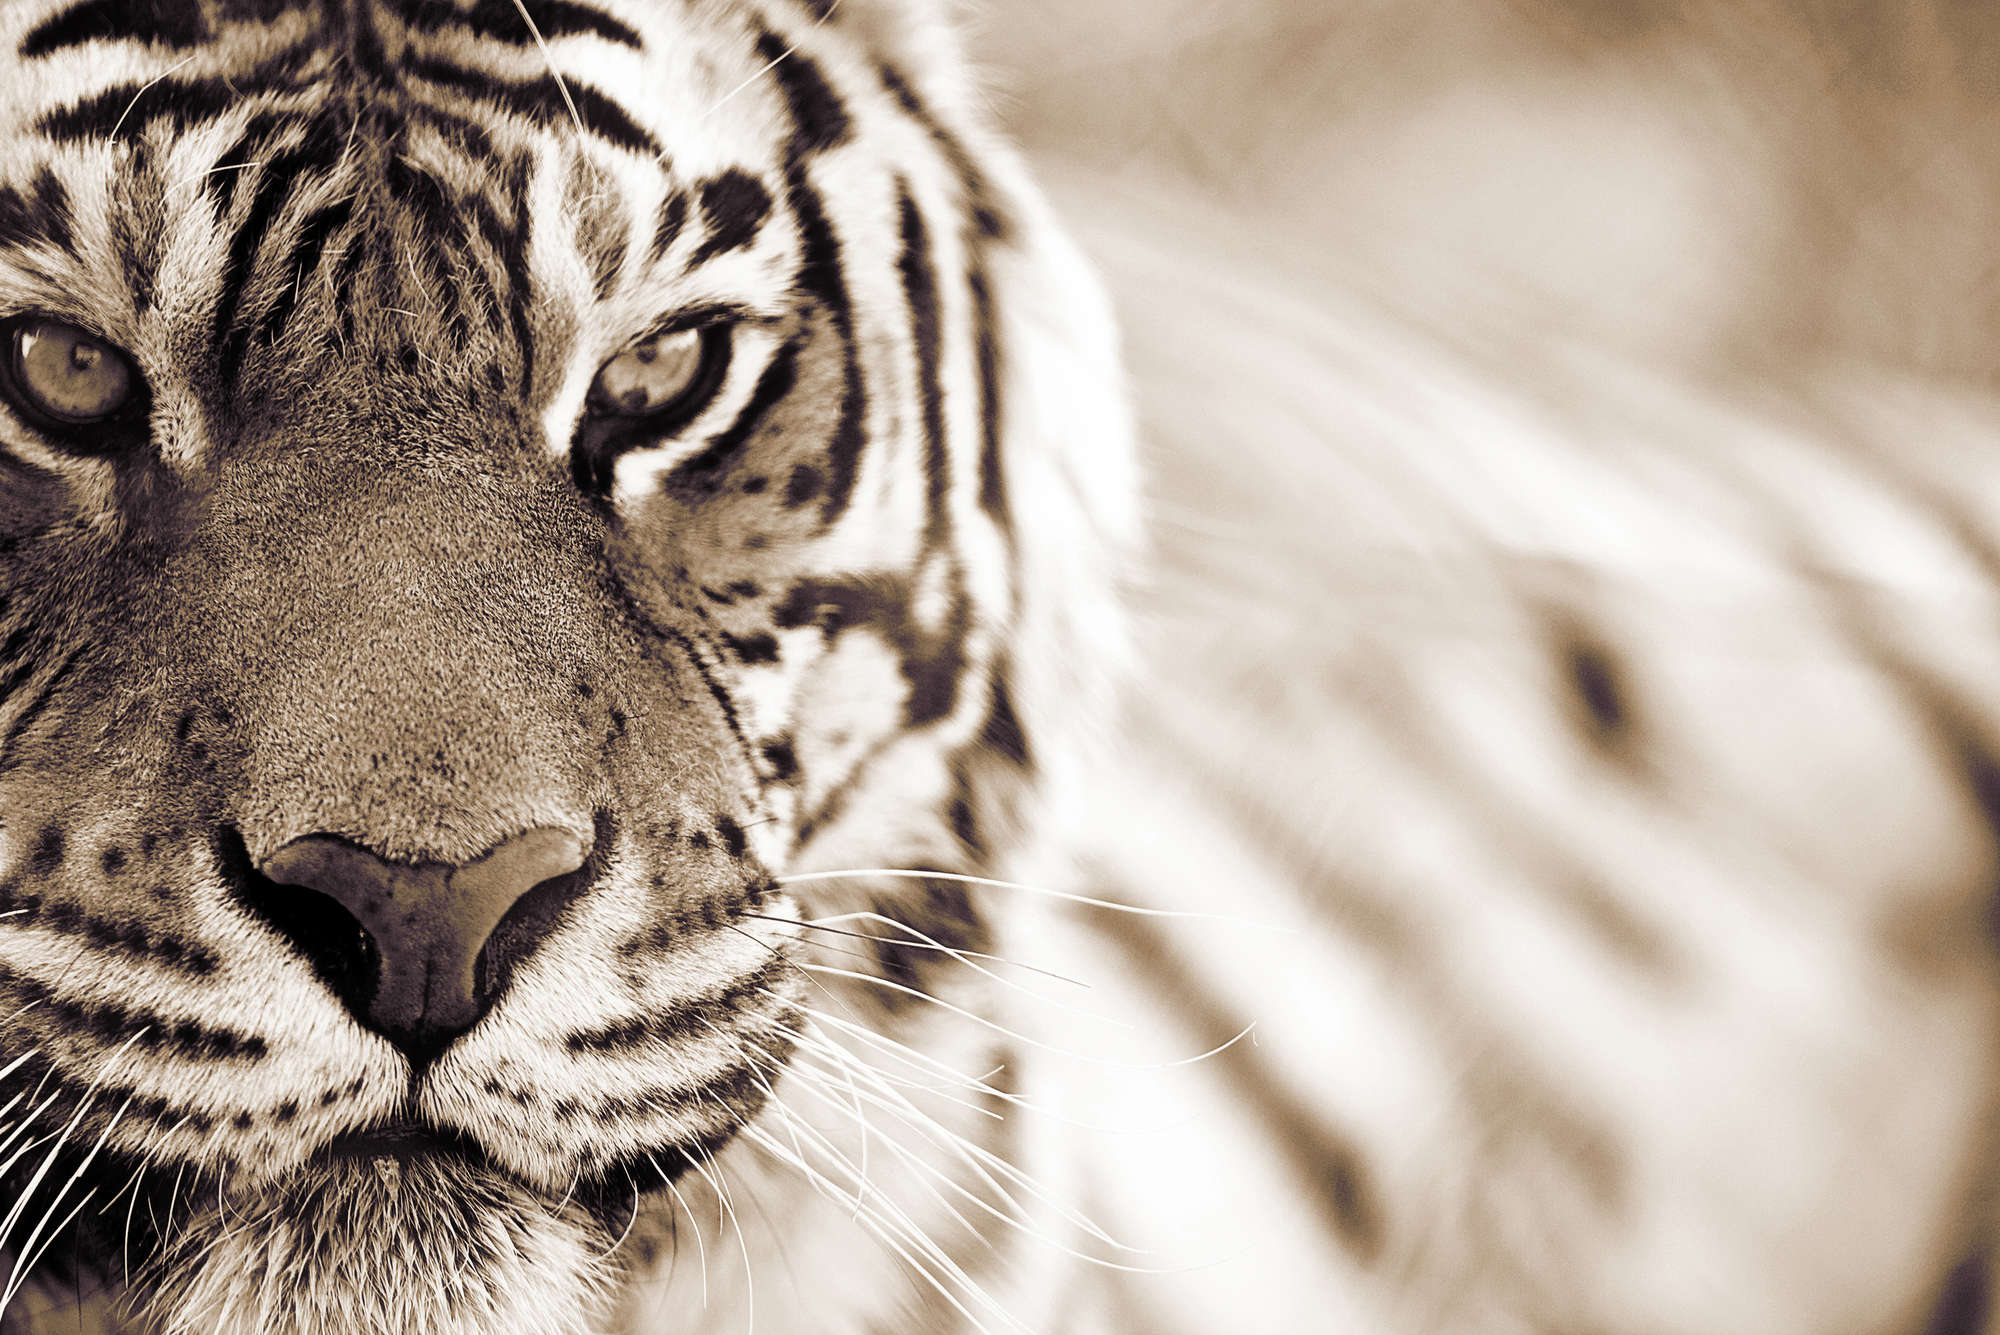             Tier Fototapete Nahaufnahme von Tiger – Perlmutt Glattvlies
        